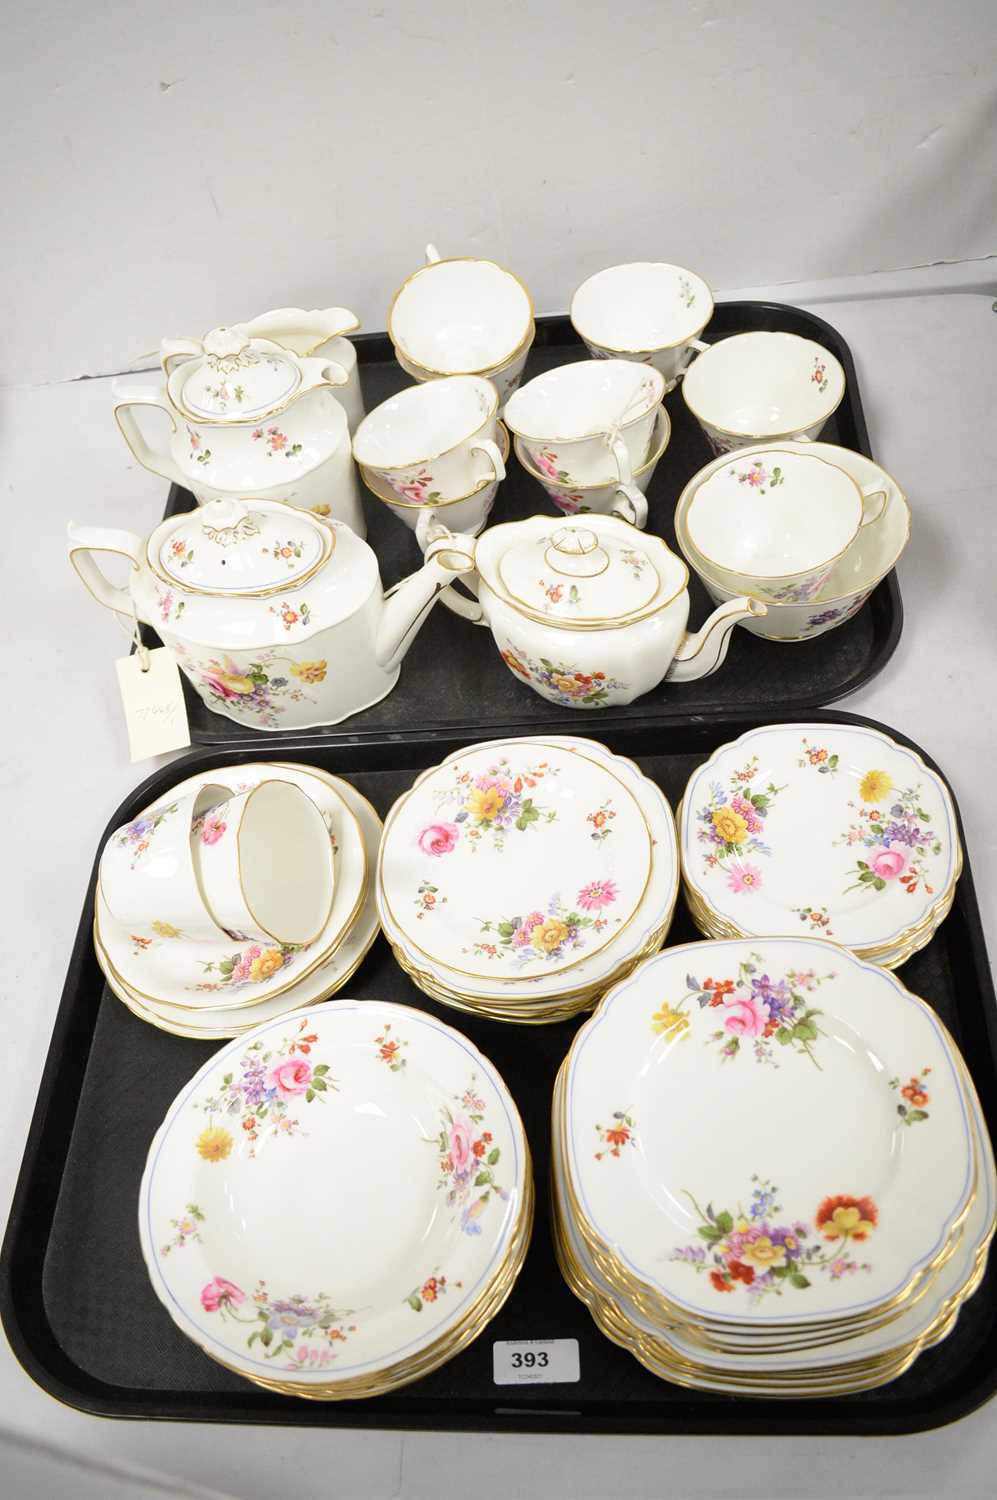 Lot 393 - Extensive Royal Crown Derby bone china tea service.